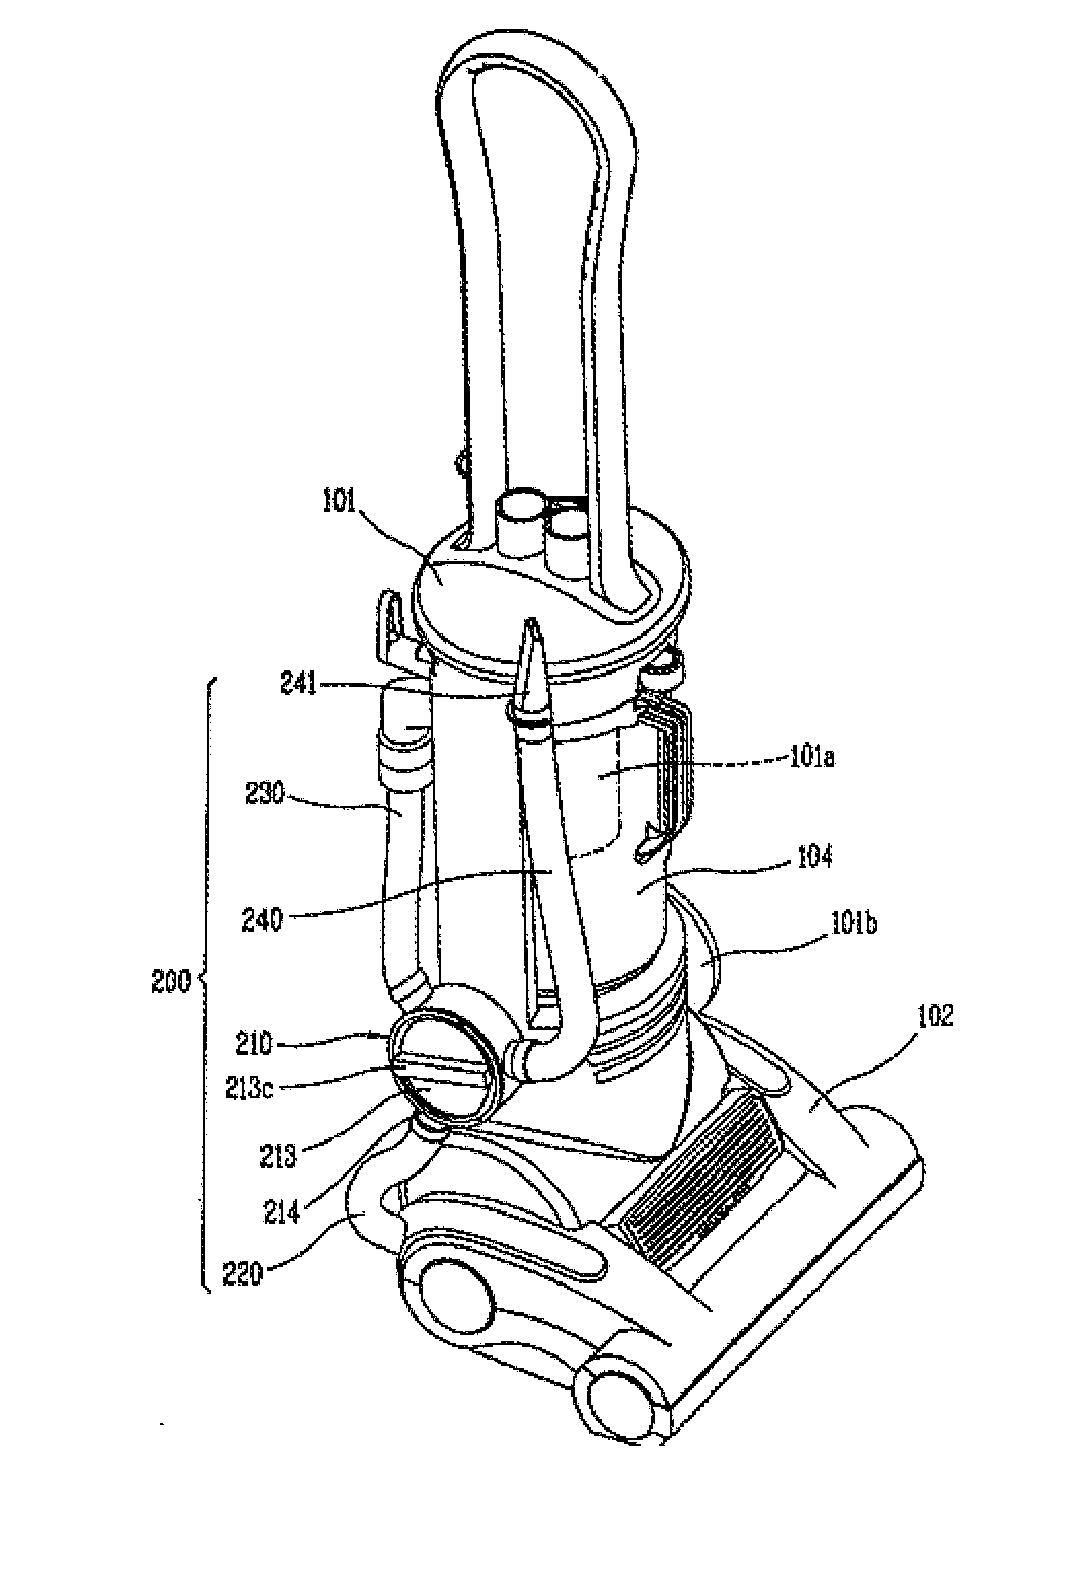 Vertical vacuum cleaner